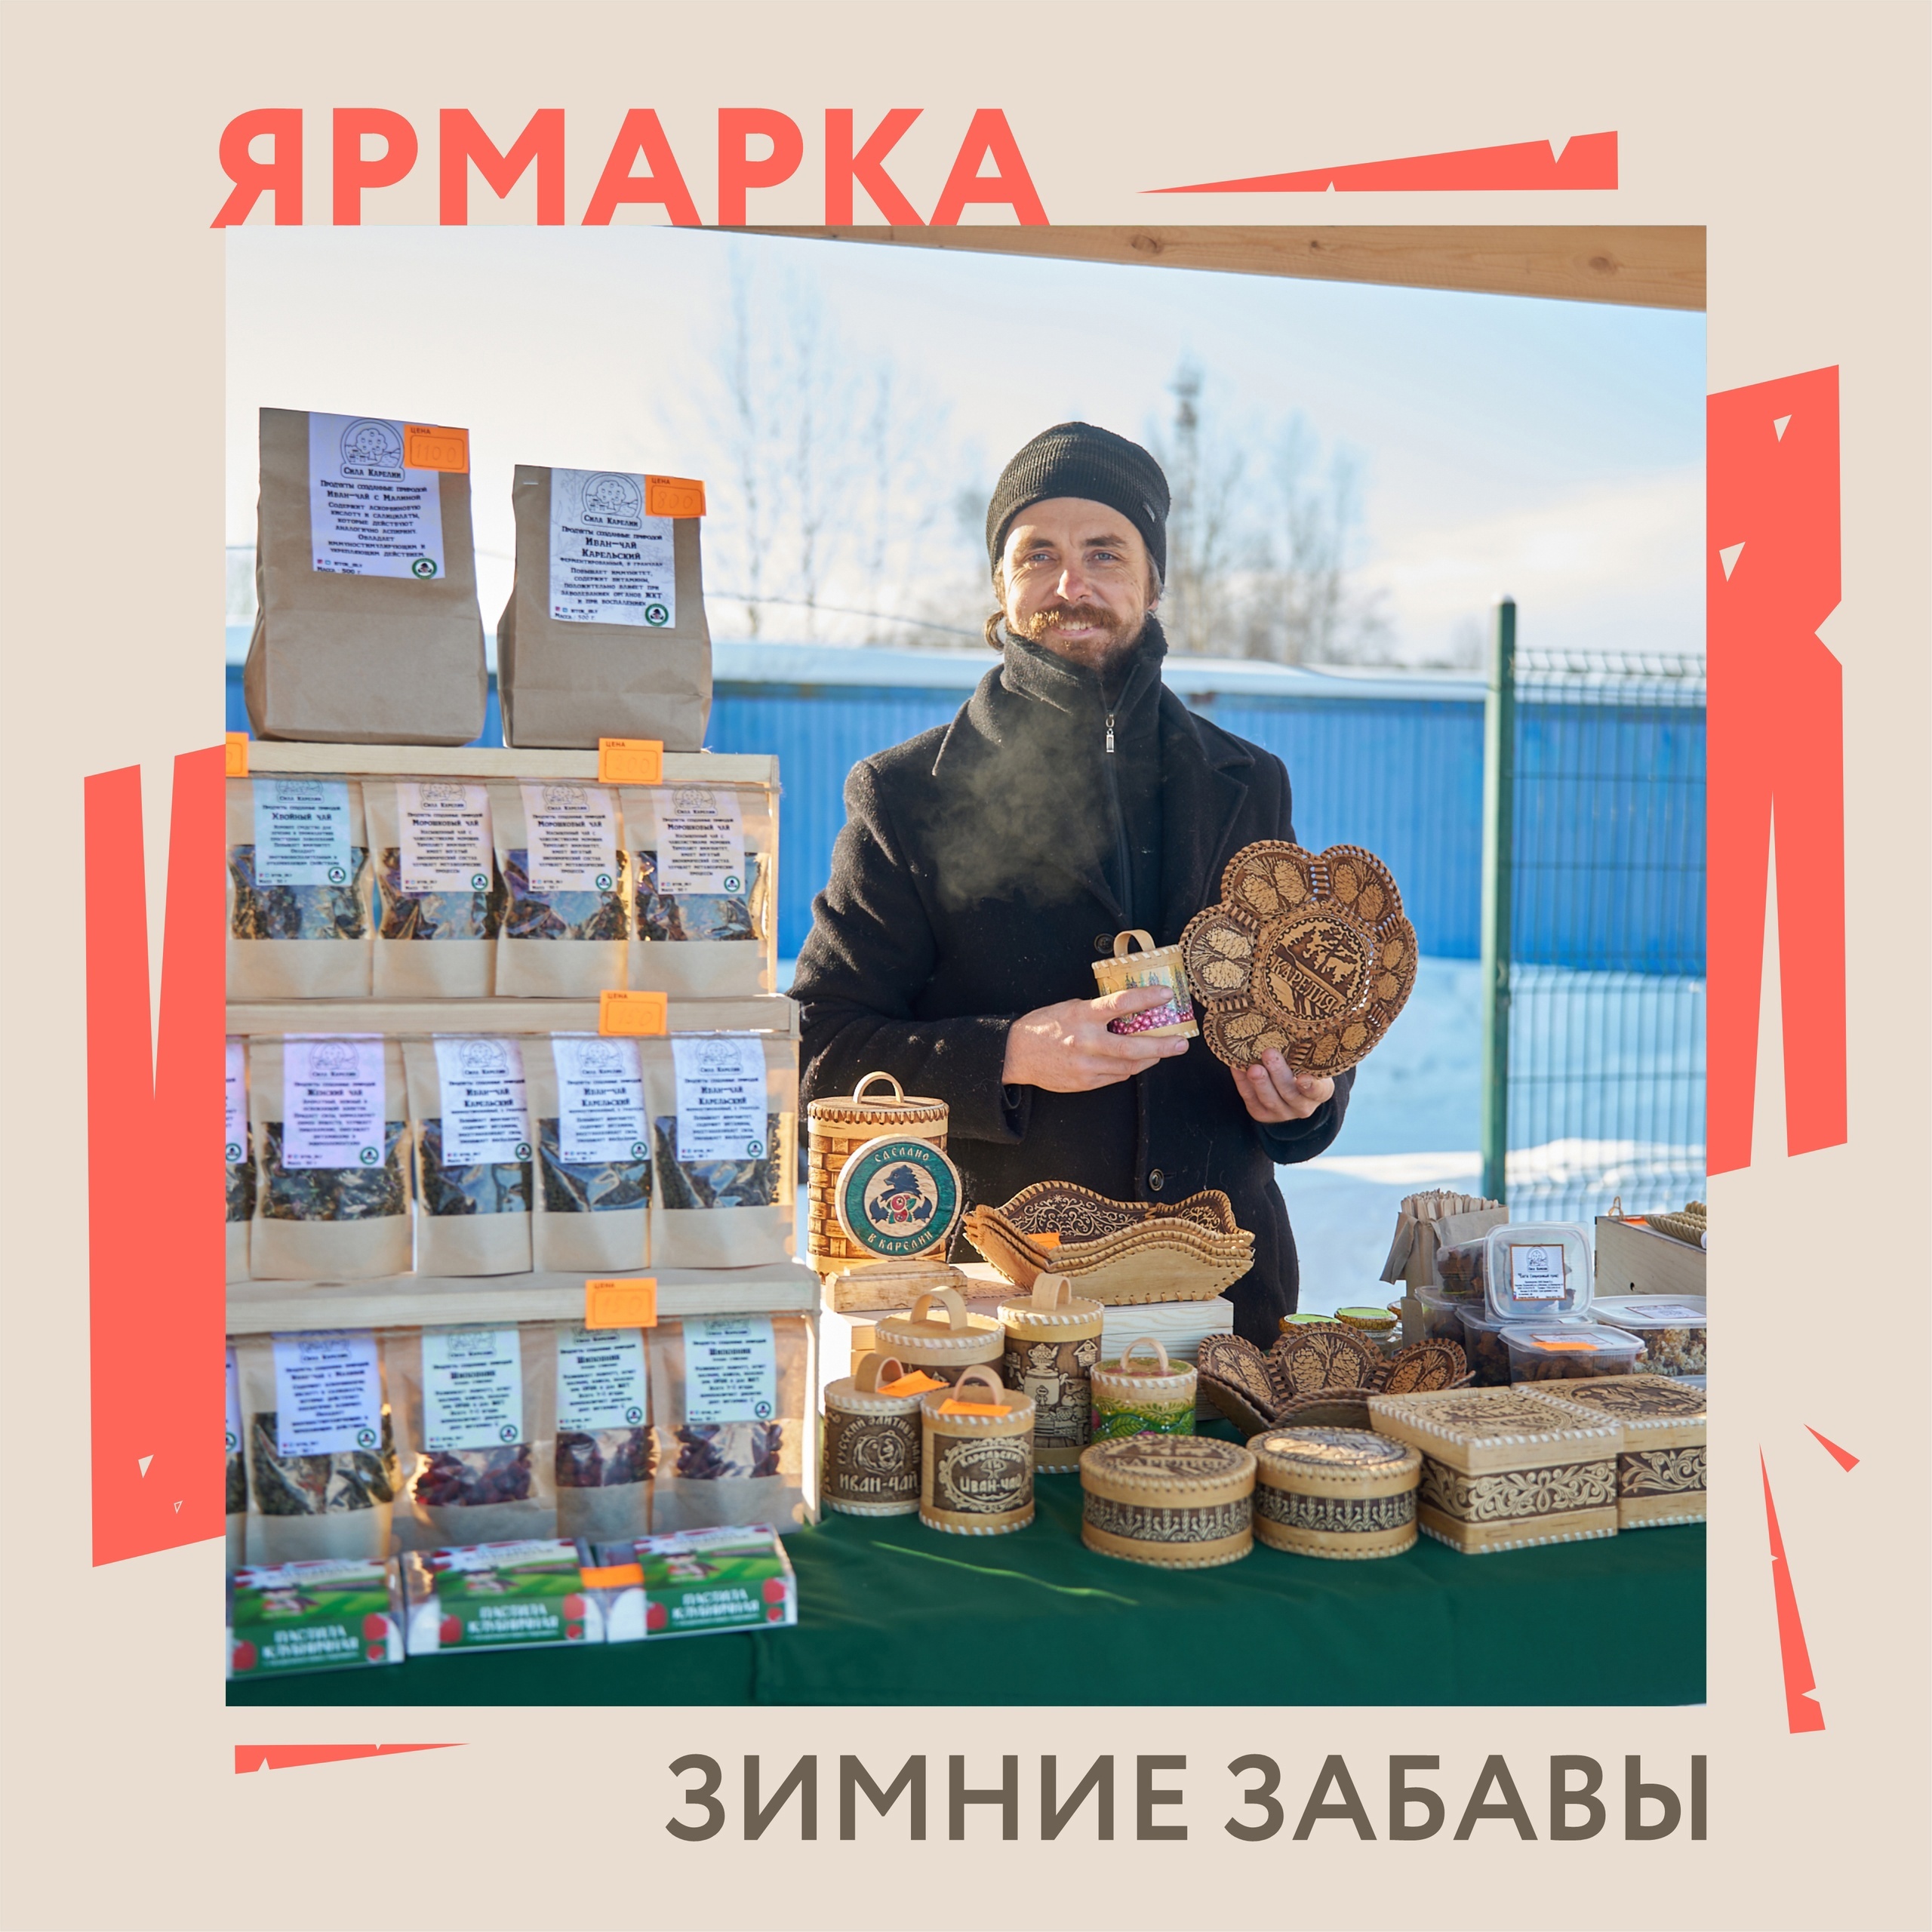 Всех любителей сладкого в Петрозаводске пригласили на ярмарку «Зимние забавы»